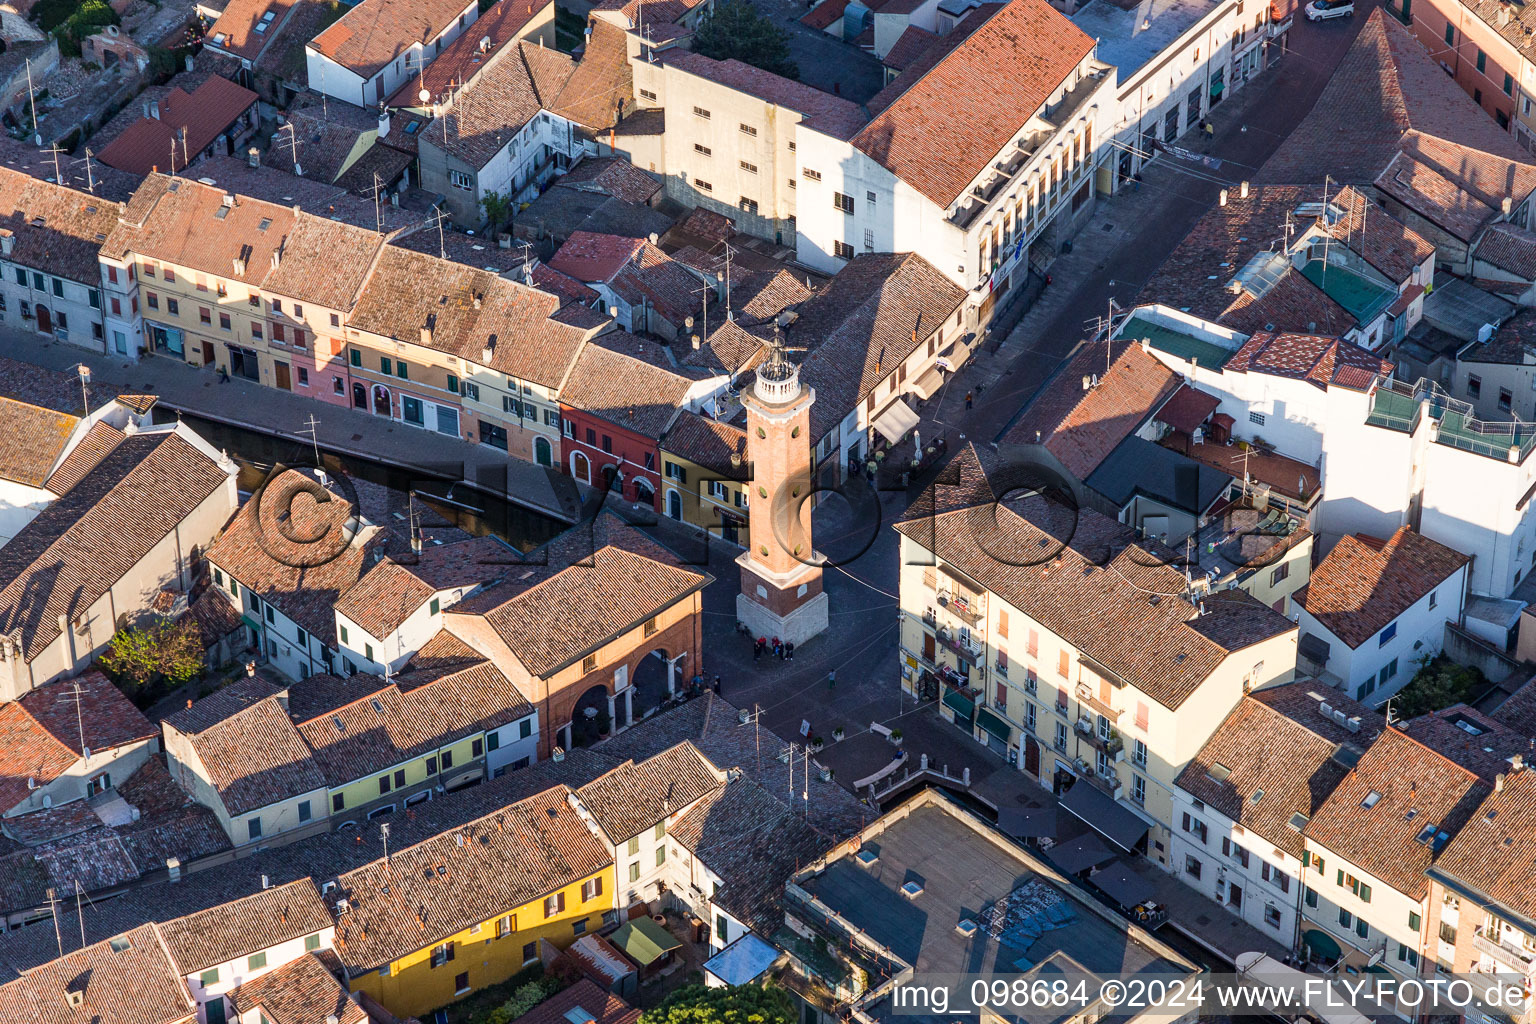 Turm- Bauwerk Torre Civica auf Platz zwischen engen historischen Gassen in Comacchio in Emilia-Romagna im Bundesland Ferrara, Italien